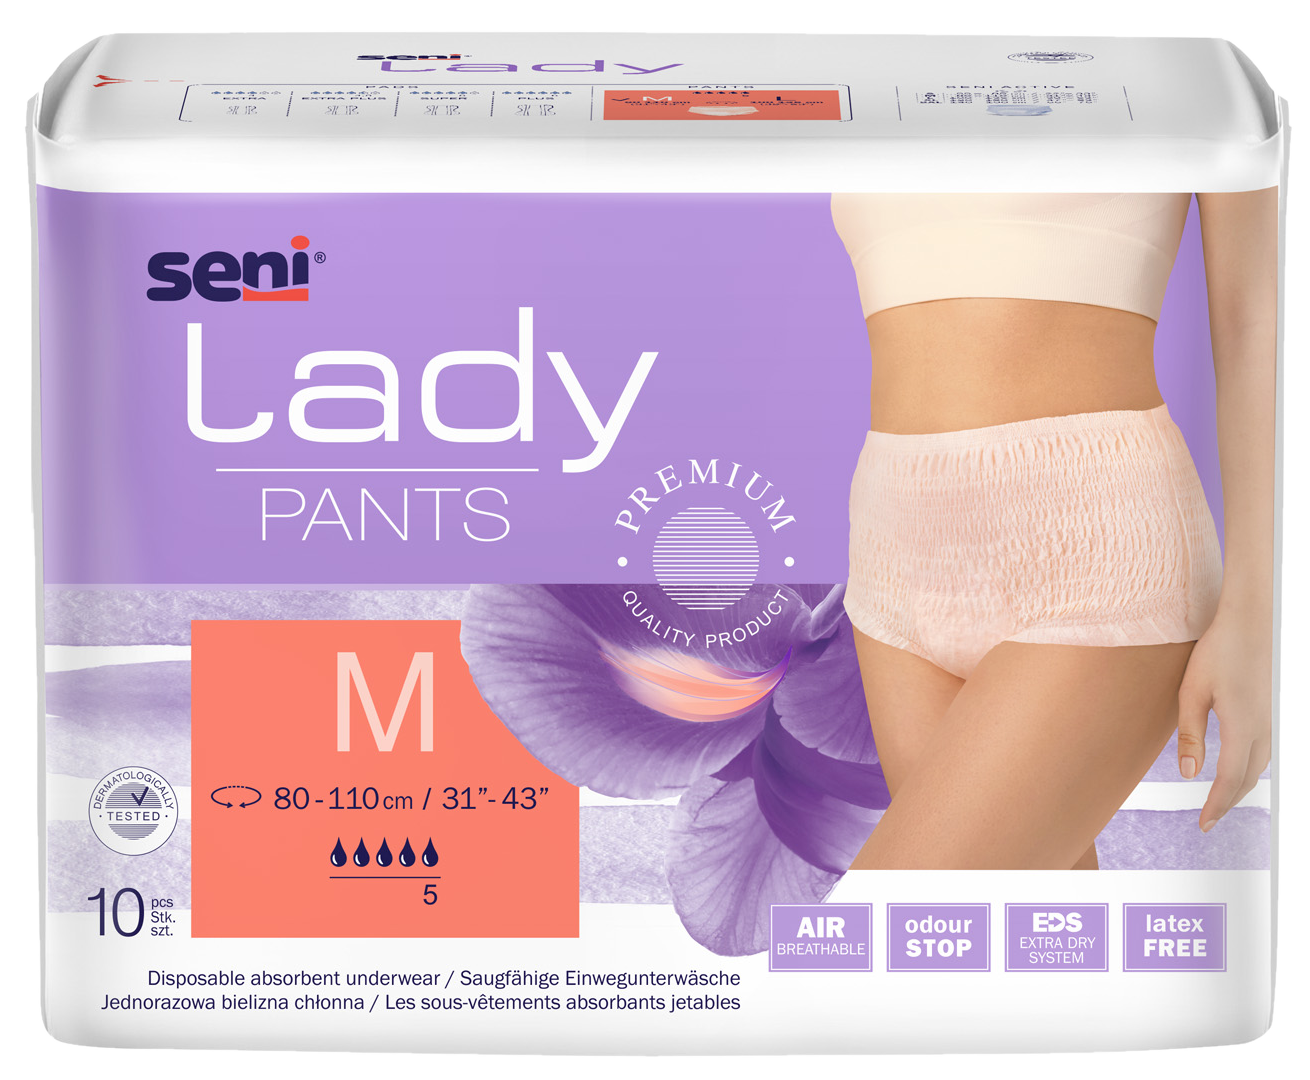 SENI Lady Pants M nappy pants , 10 pcs.